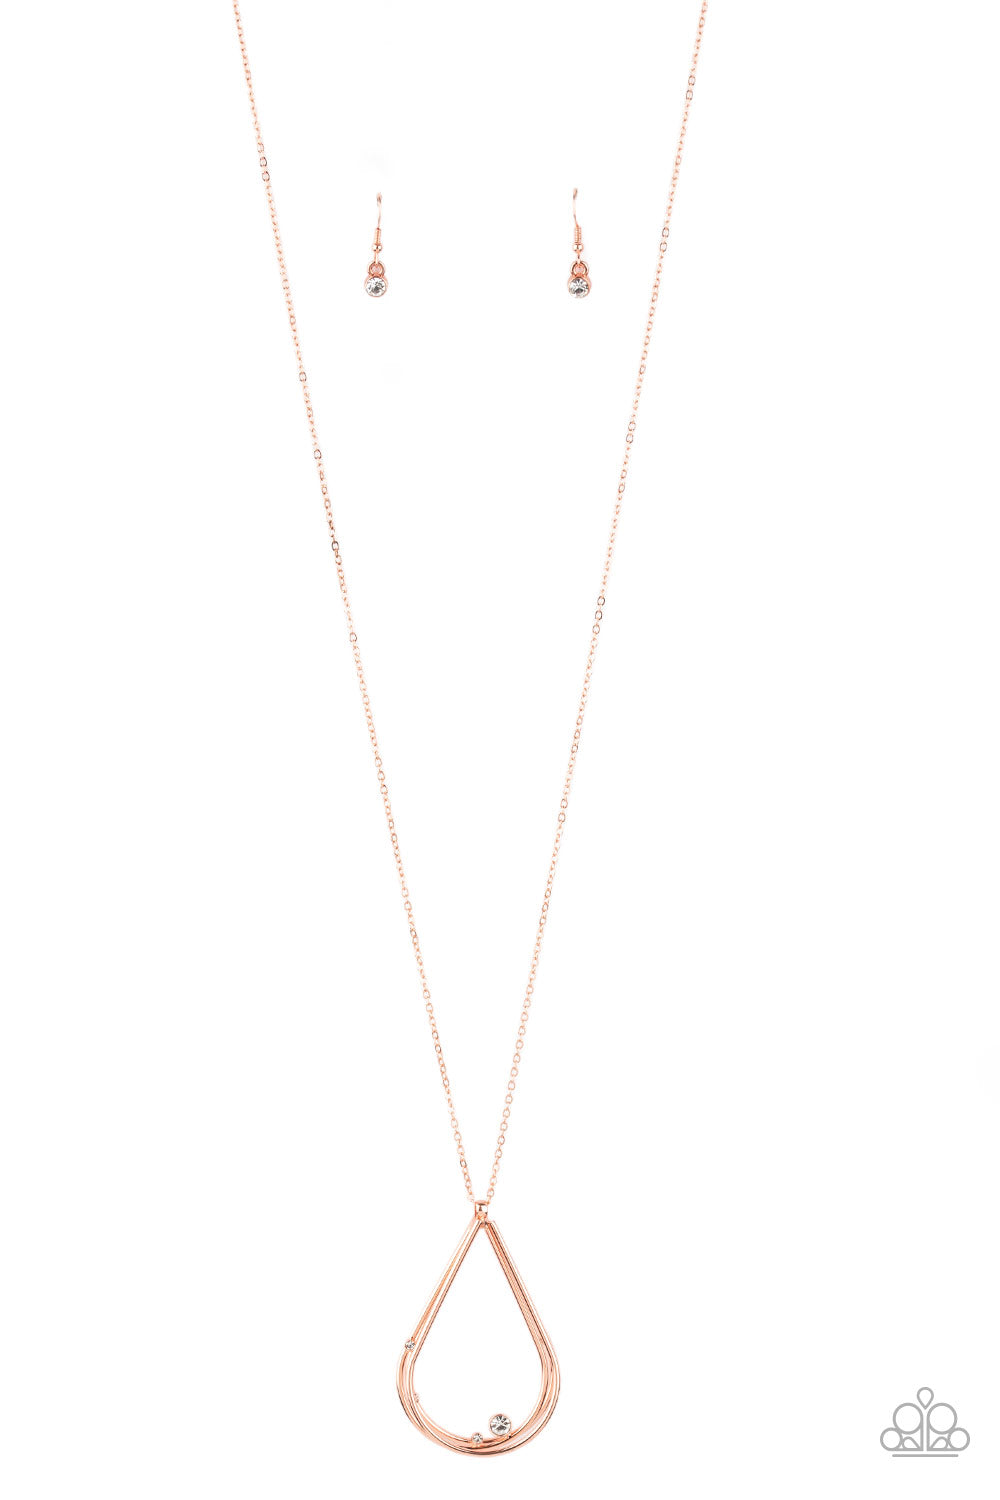 Royal REIGN-Storm - copper - Paparazzi necklace